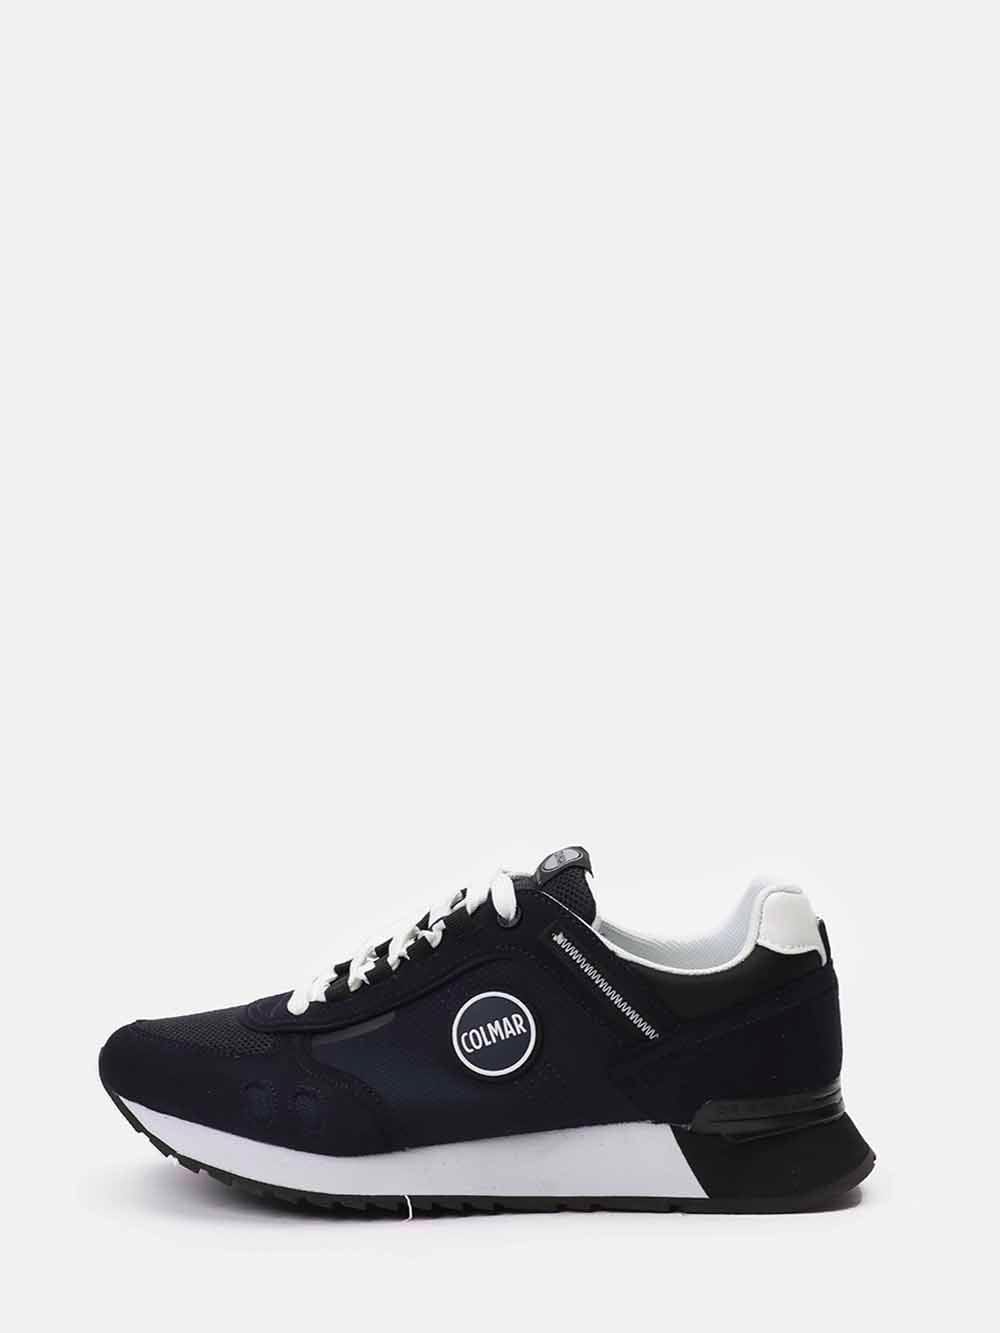 Navy blue sneakers